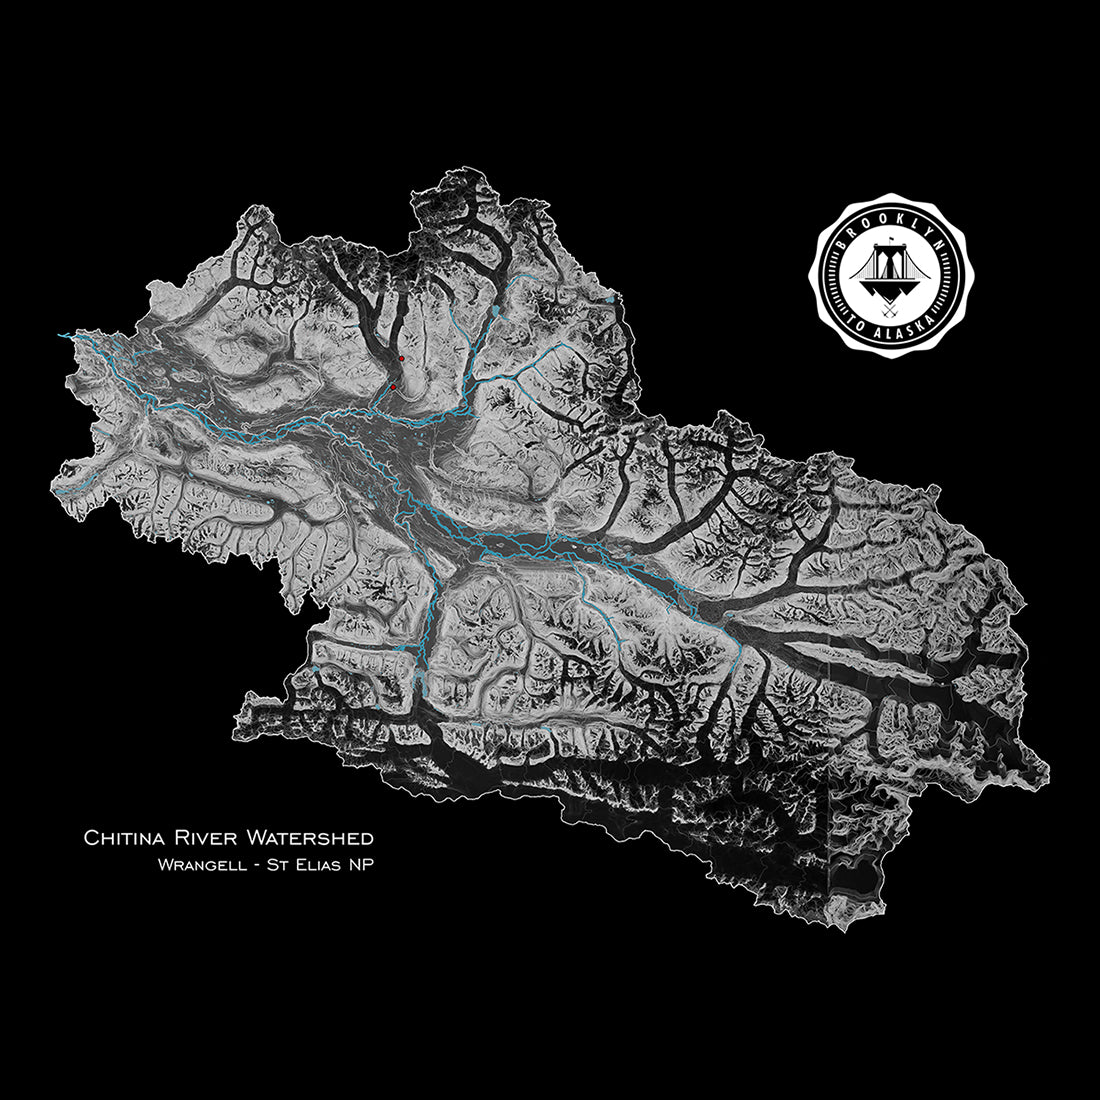 Chitina River Watershed